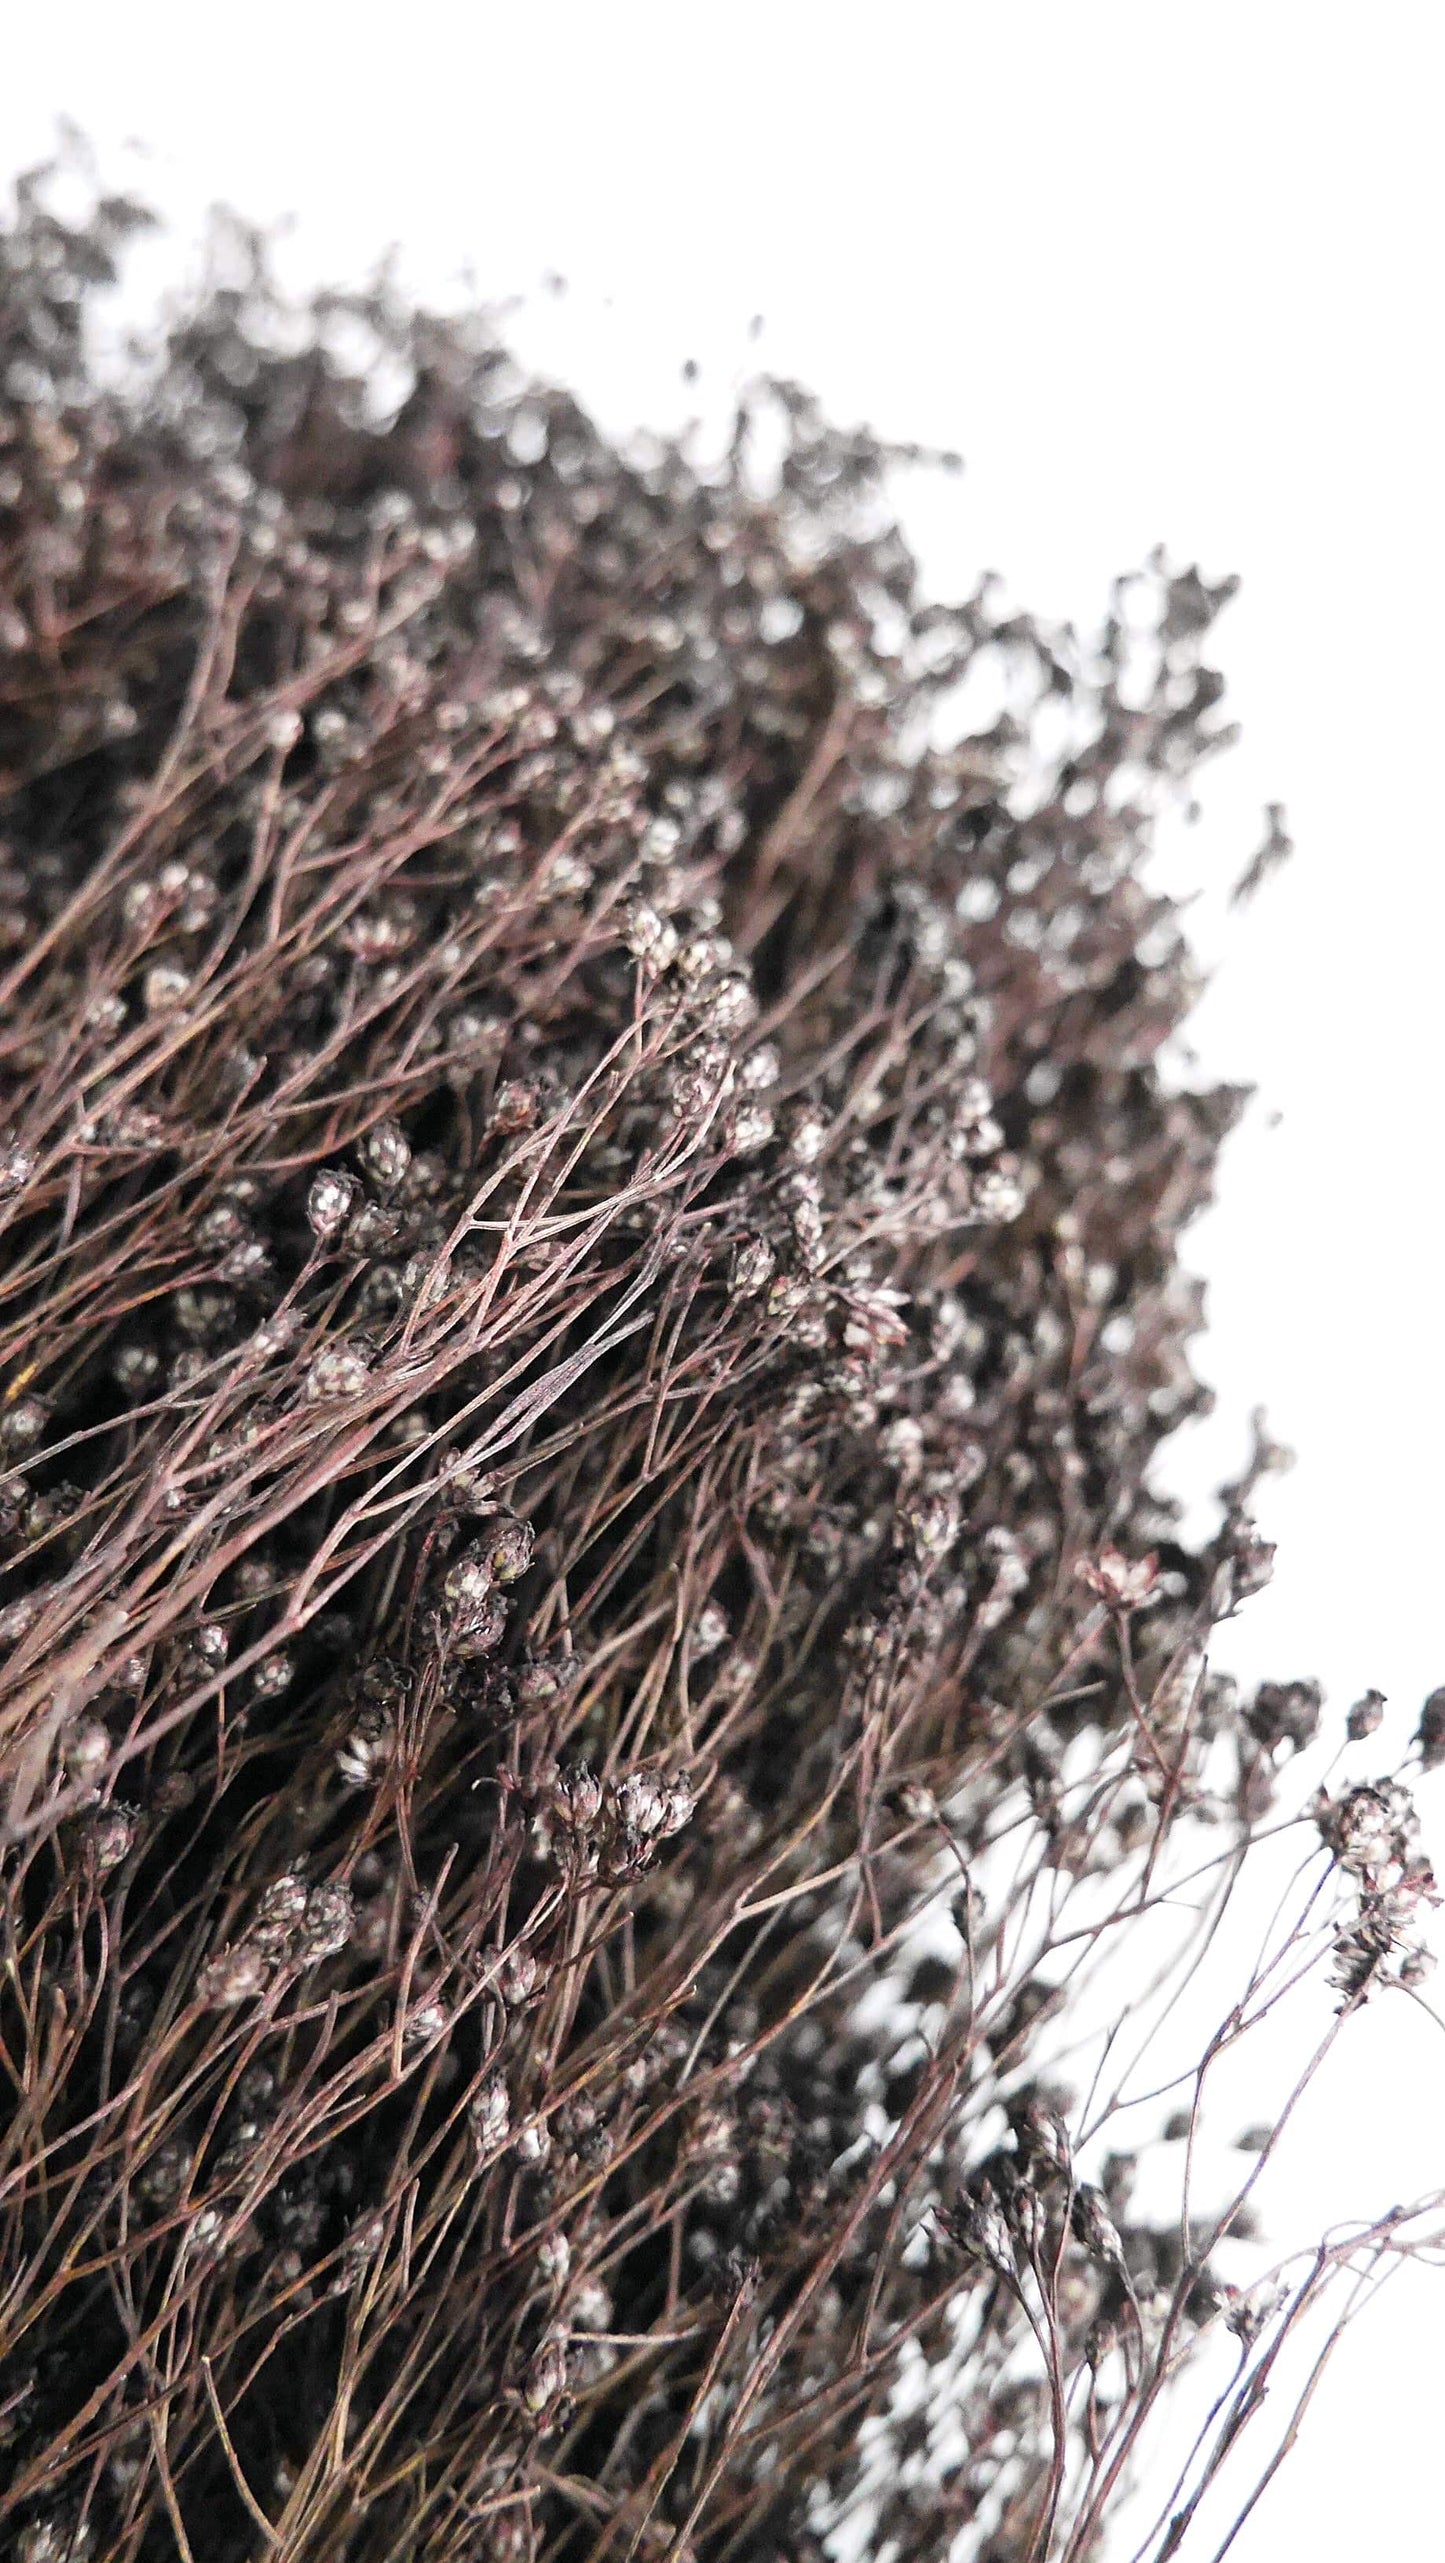 Broom Bloom gefärbt getrocknet deep brown Trockenblumen - Der Backmichgluecklich Online Shop